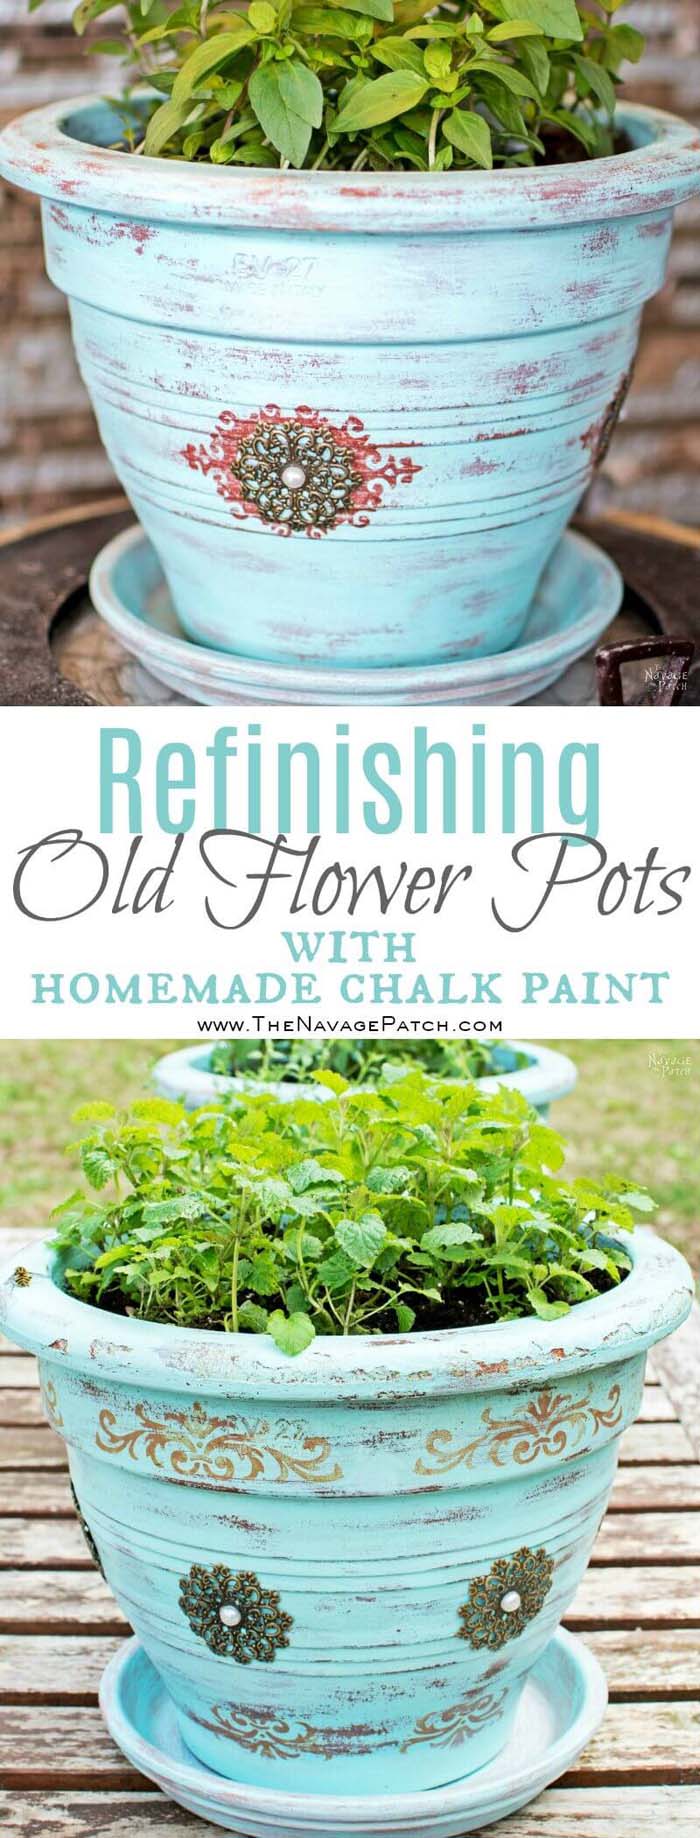 Chalk Paint Old Flower Pots #diy #paint #garden #decorations #decorhomeideas